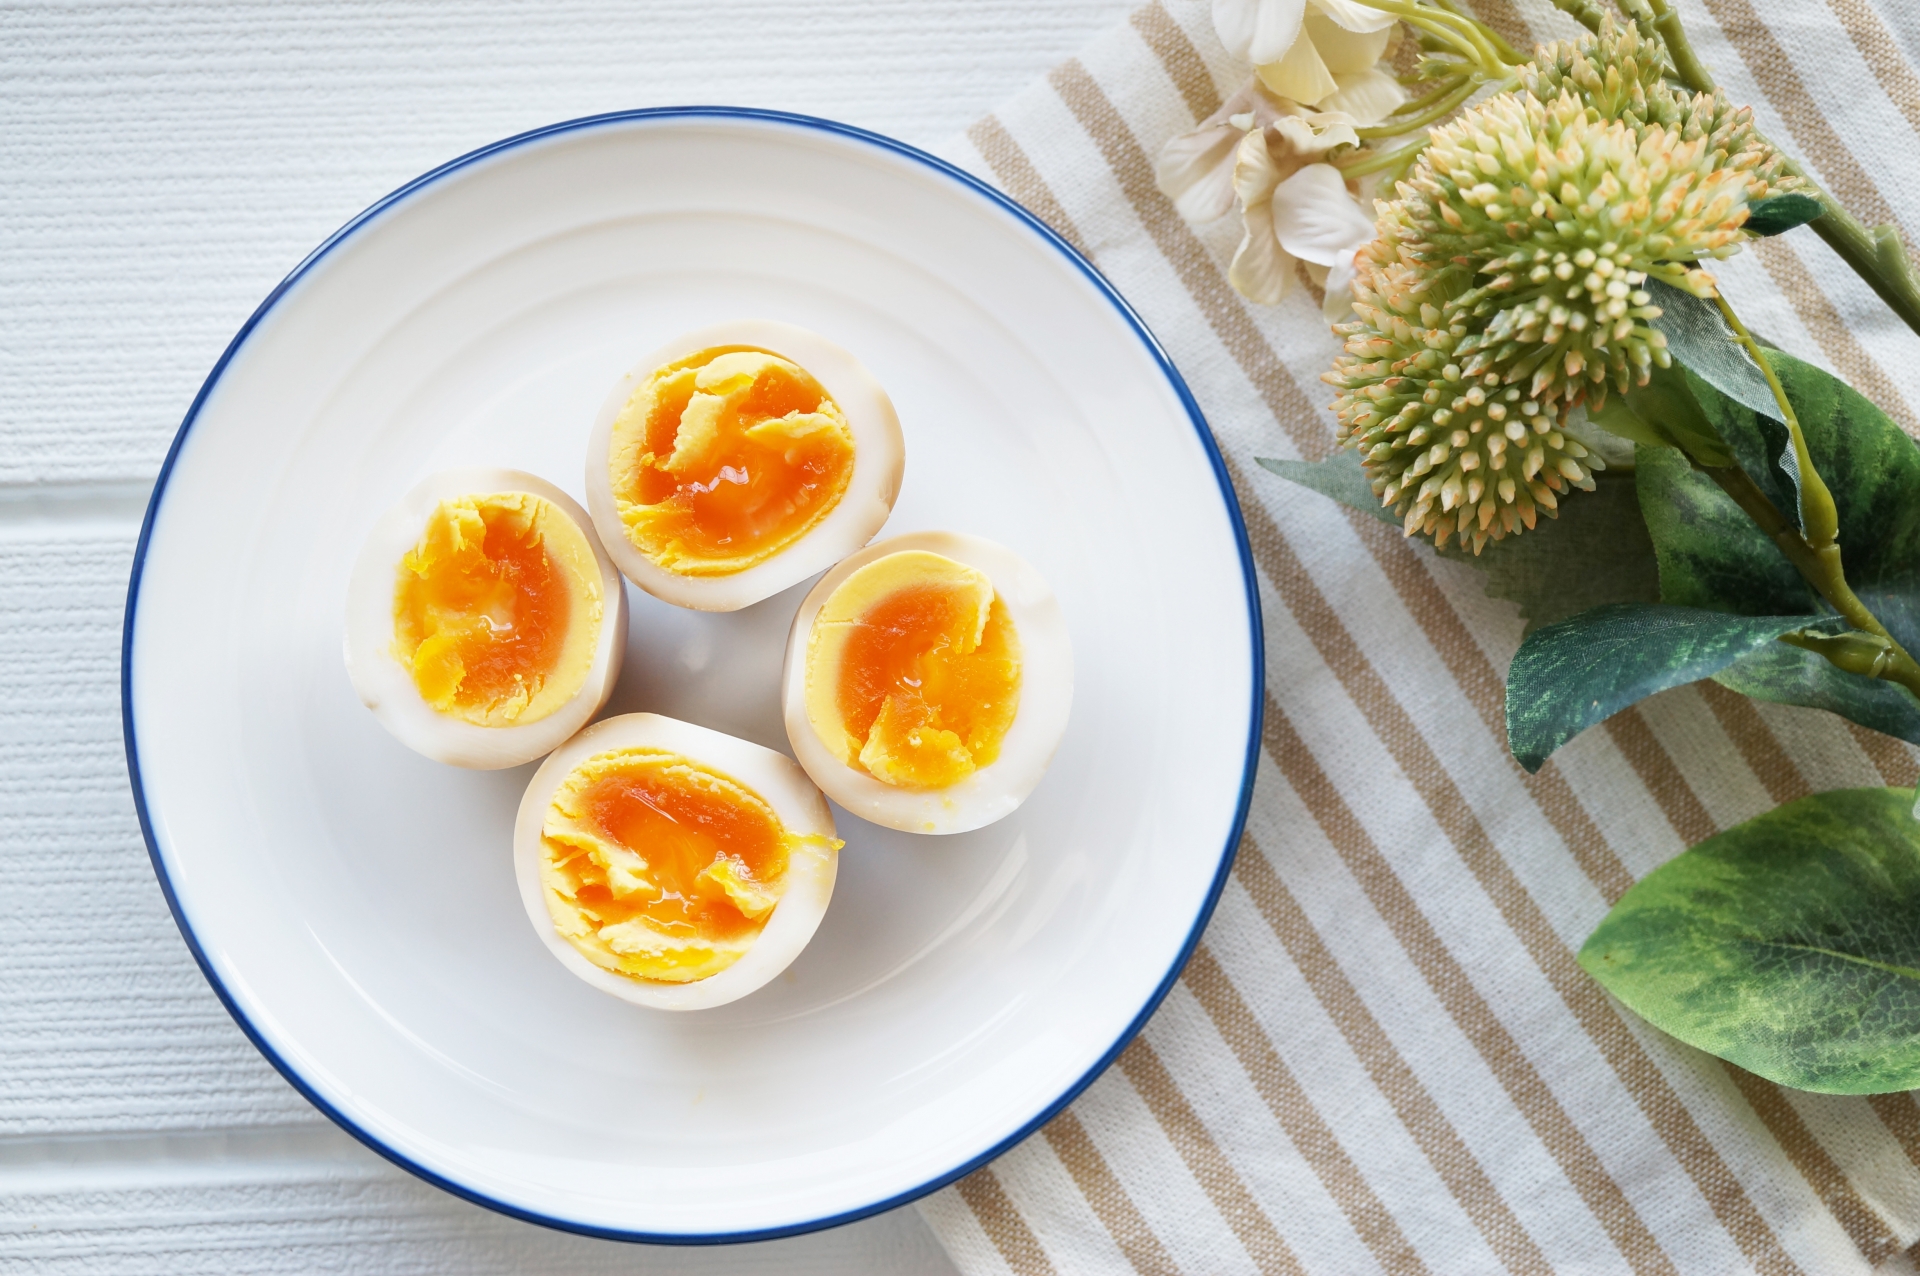 ゆで卵ダイエット やり方は カロリーは 1日に何個まで 情報発信ブログサイト Blue Rose